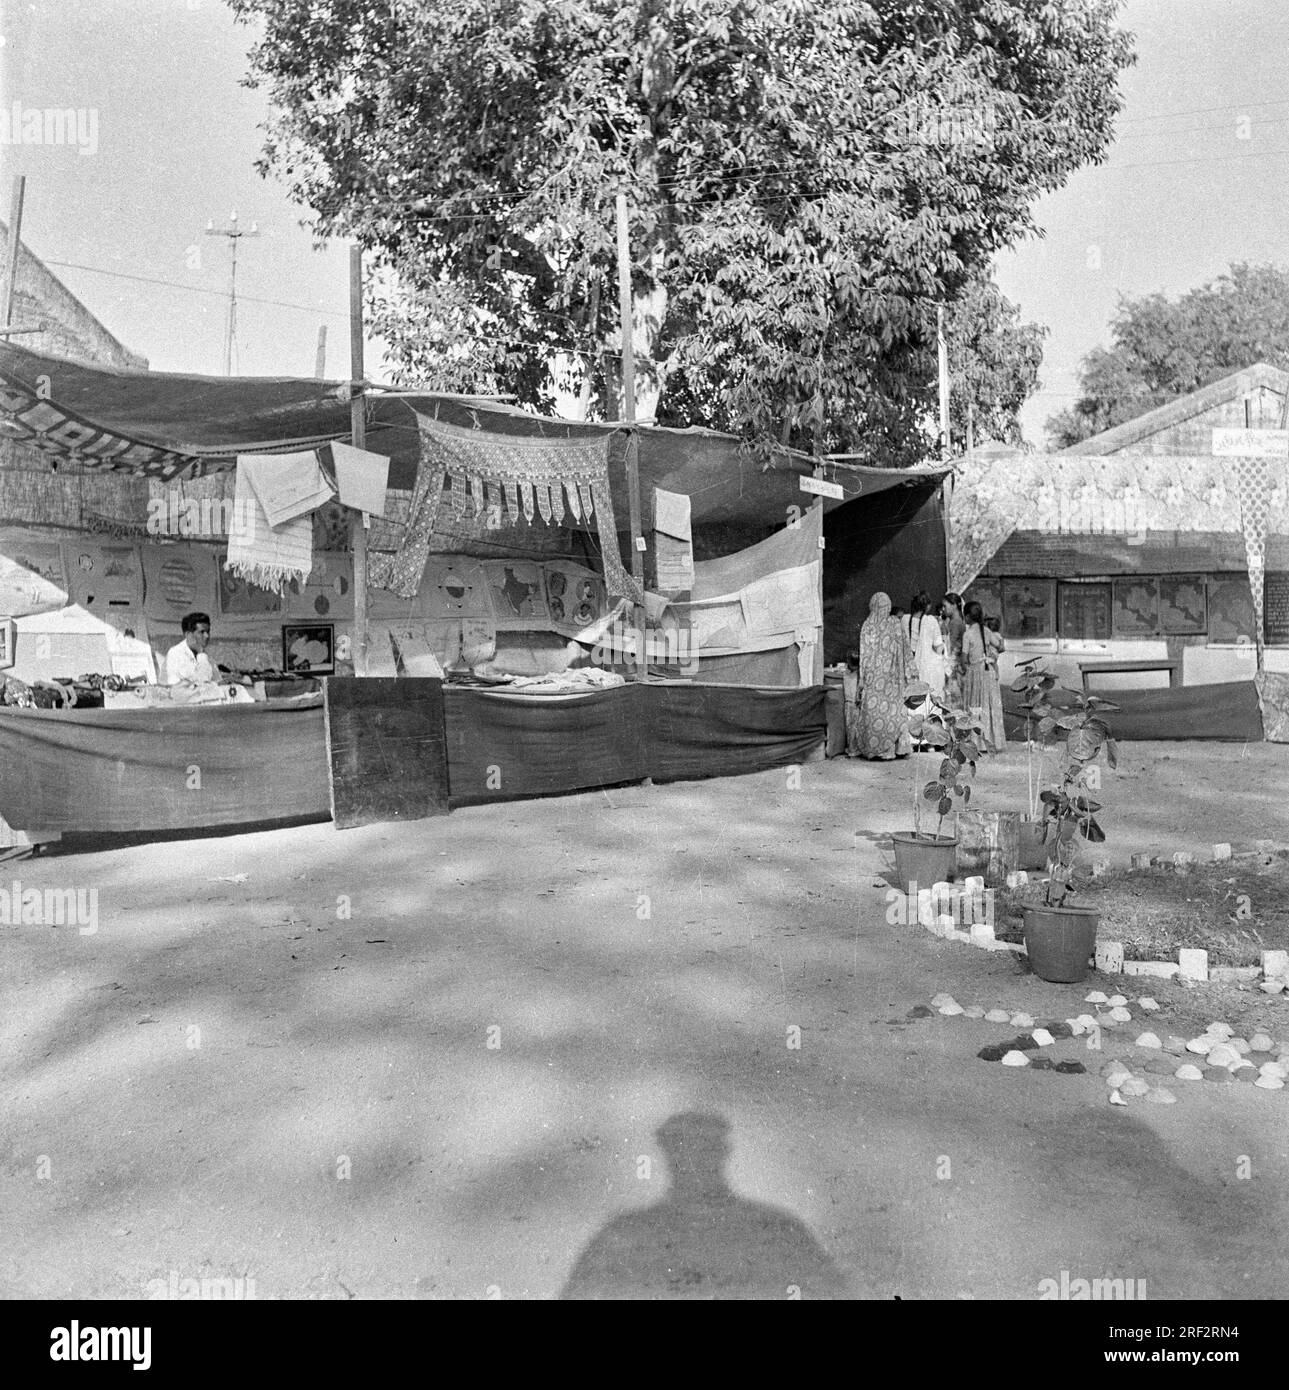 Imagen en blanco y negro de la vieja vendimia del siglo XX de la tienda de artesanía de la feria de la aldea rural india de los años cuarenta Foto de stock